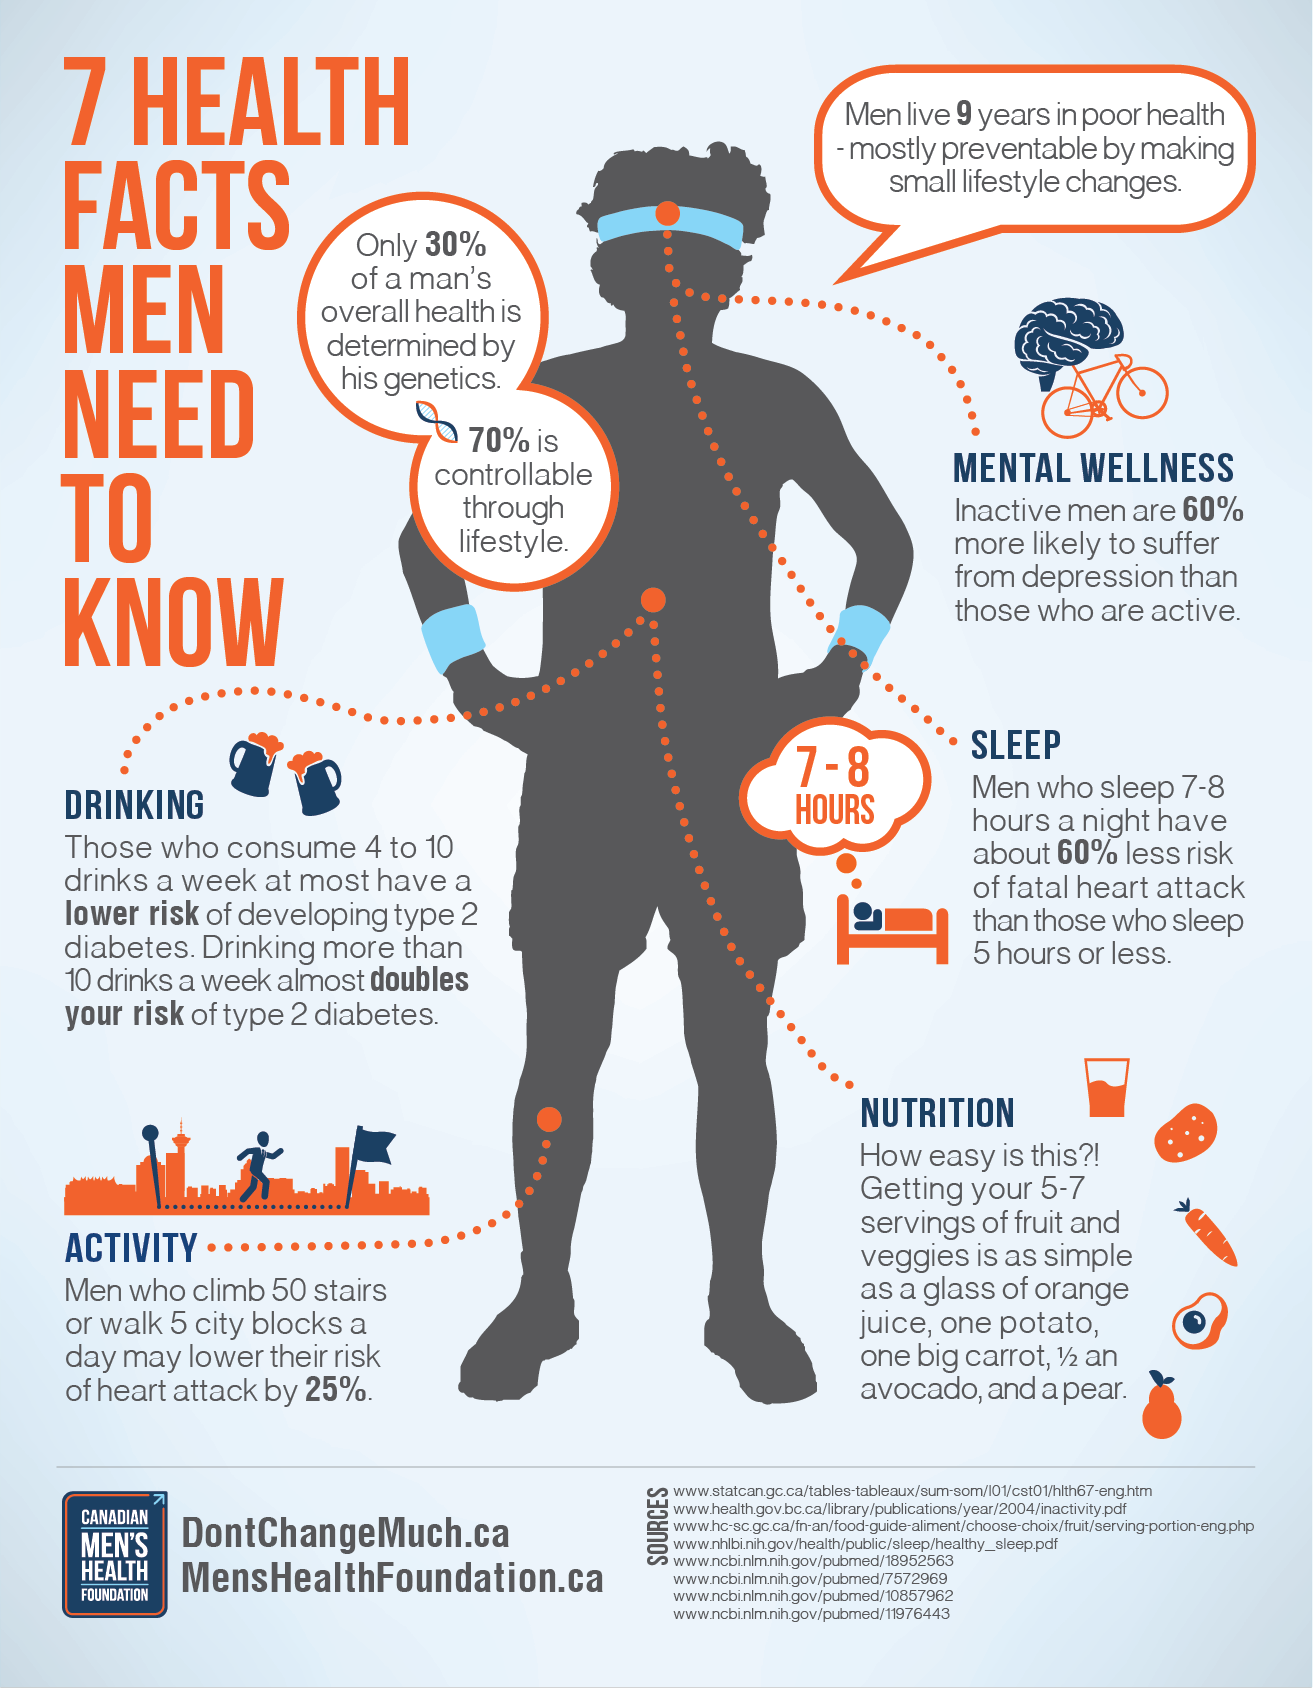 7healthfacts-infographic